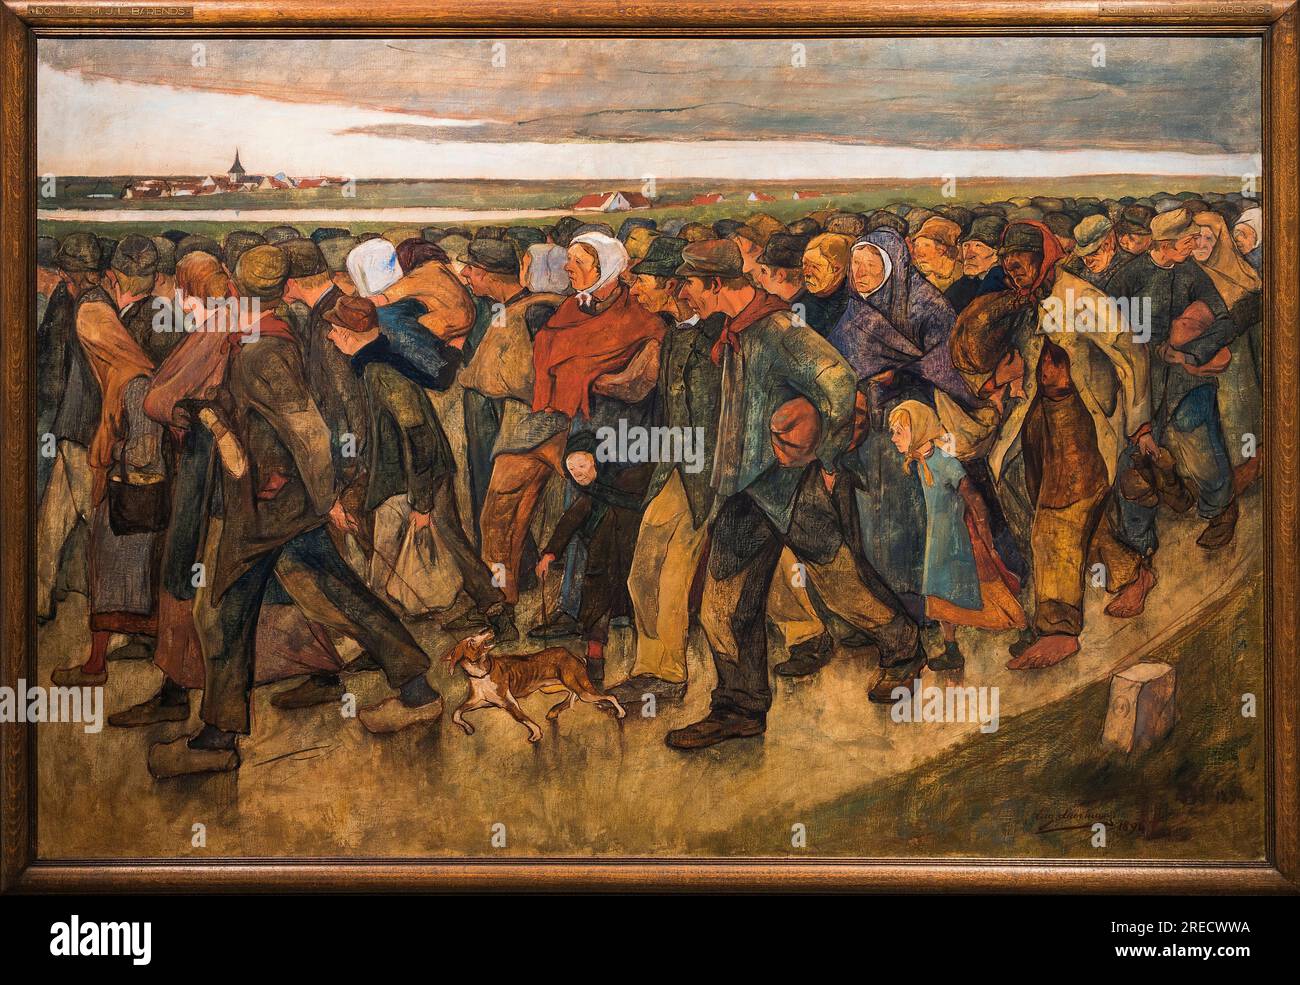 Emigrants - 'Les emigrants' Peinture de Eugene Laermans (1864-1940) 1894 Dim. 150 x 211 cm Bruxelles, Musees Royaux des Beaux-Arts de Belgique Musee d'Art Ancien Stock Photo